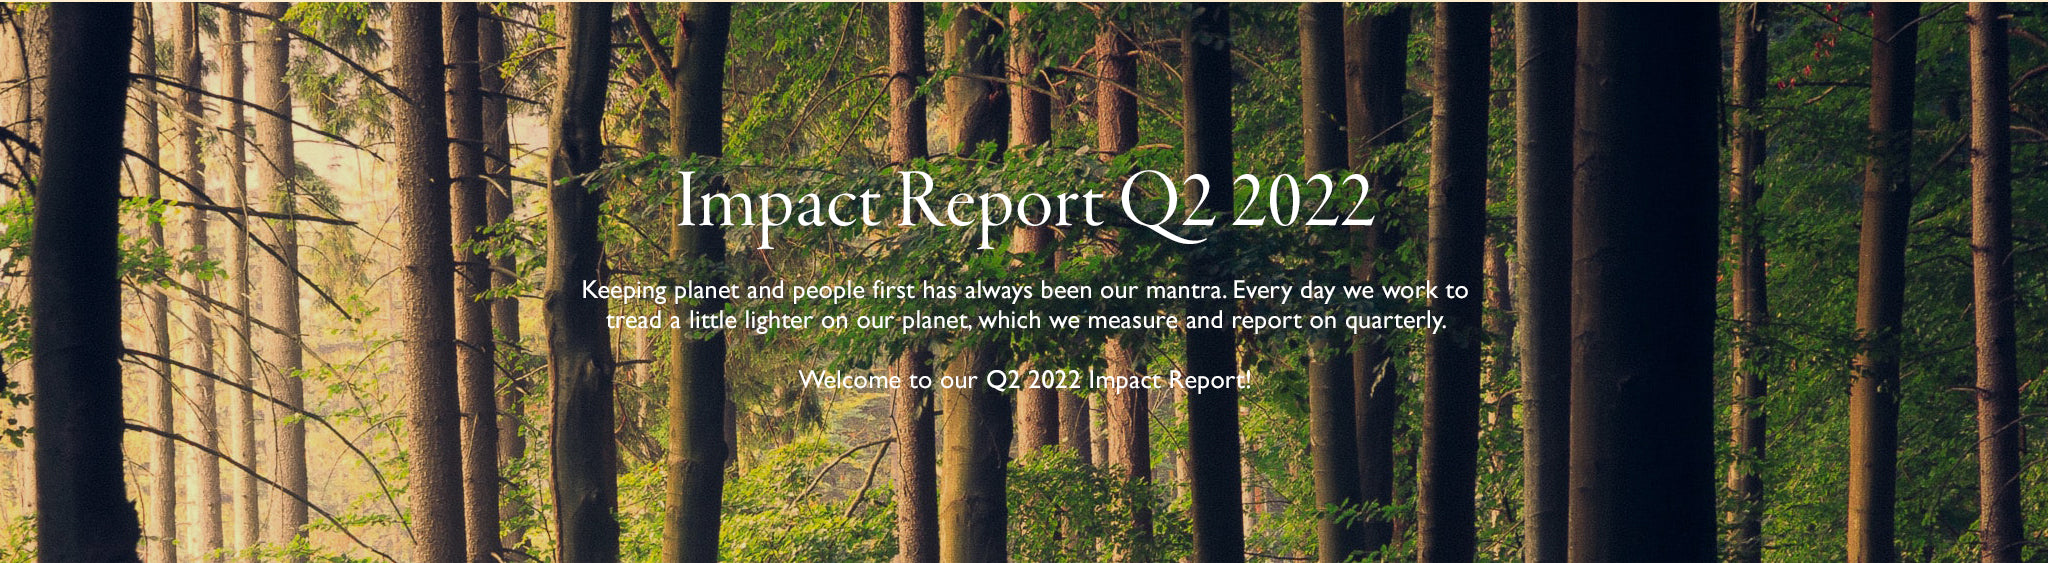 Impact Report Q3 2021